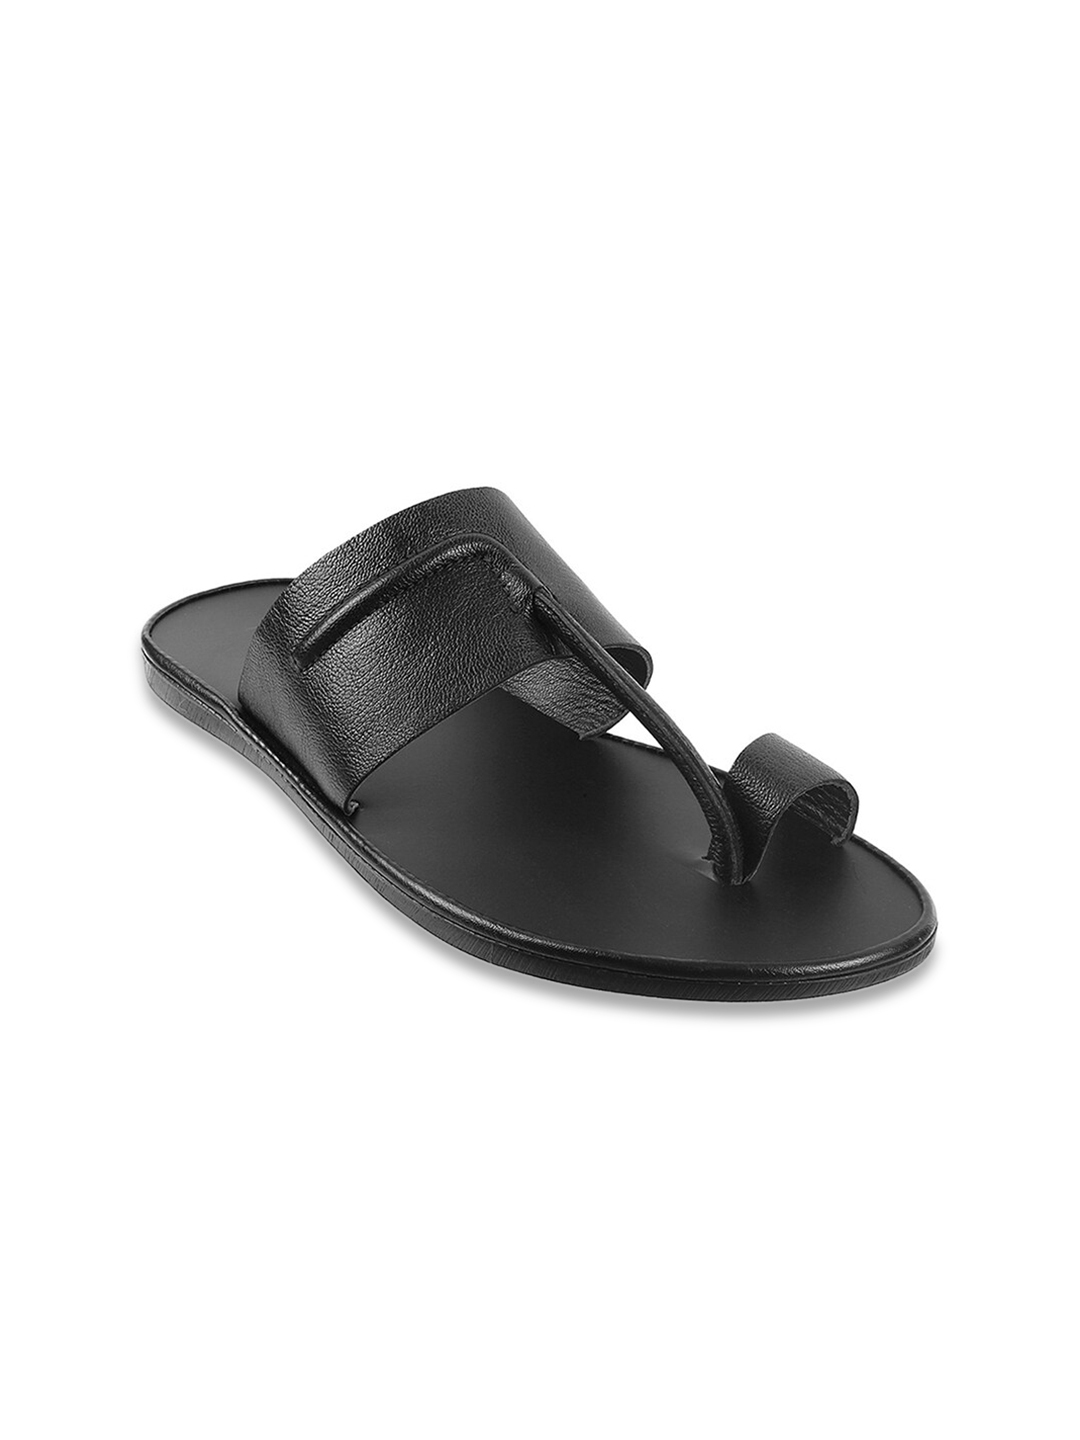 Buy Mochi Men Black Leather Comfort Sandals - Sandals for Men 14060316 ...